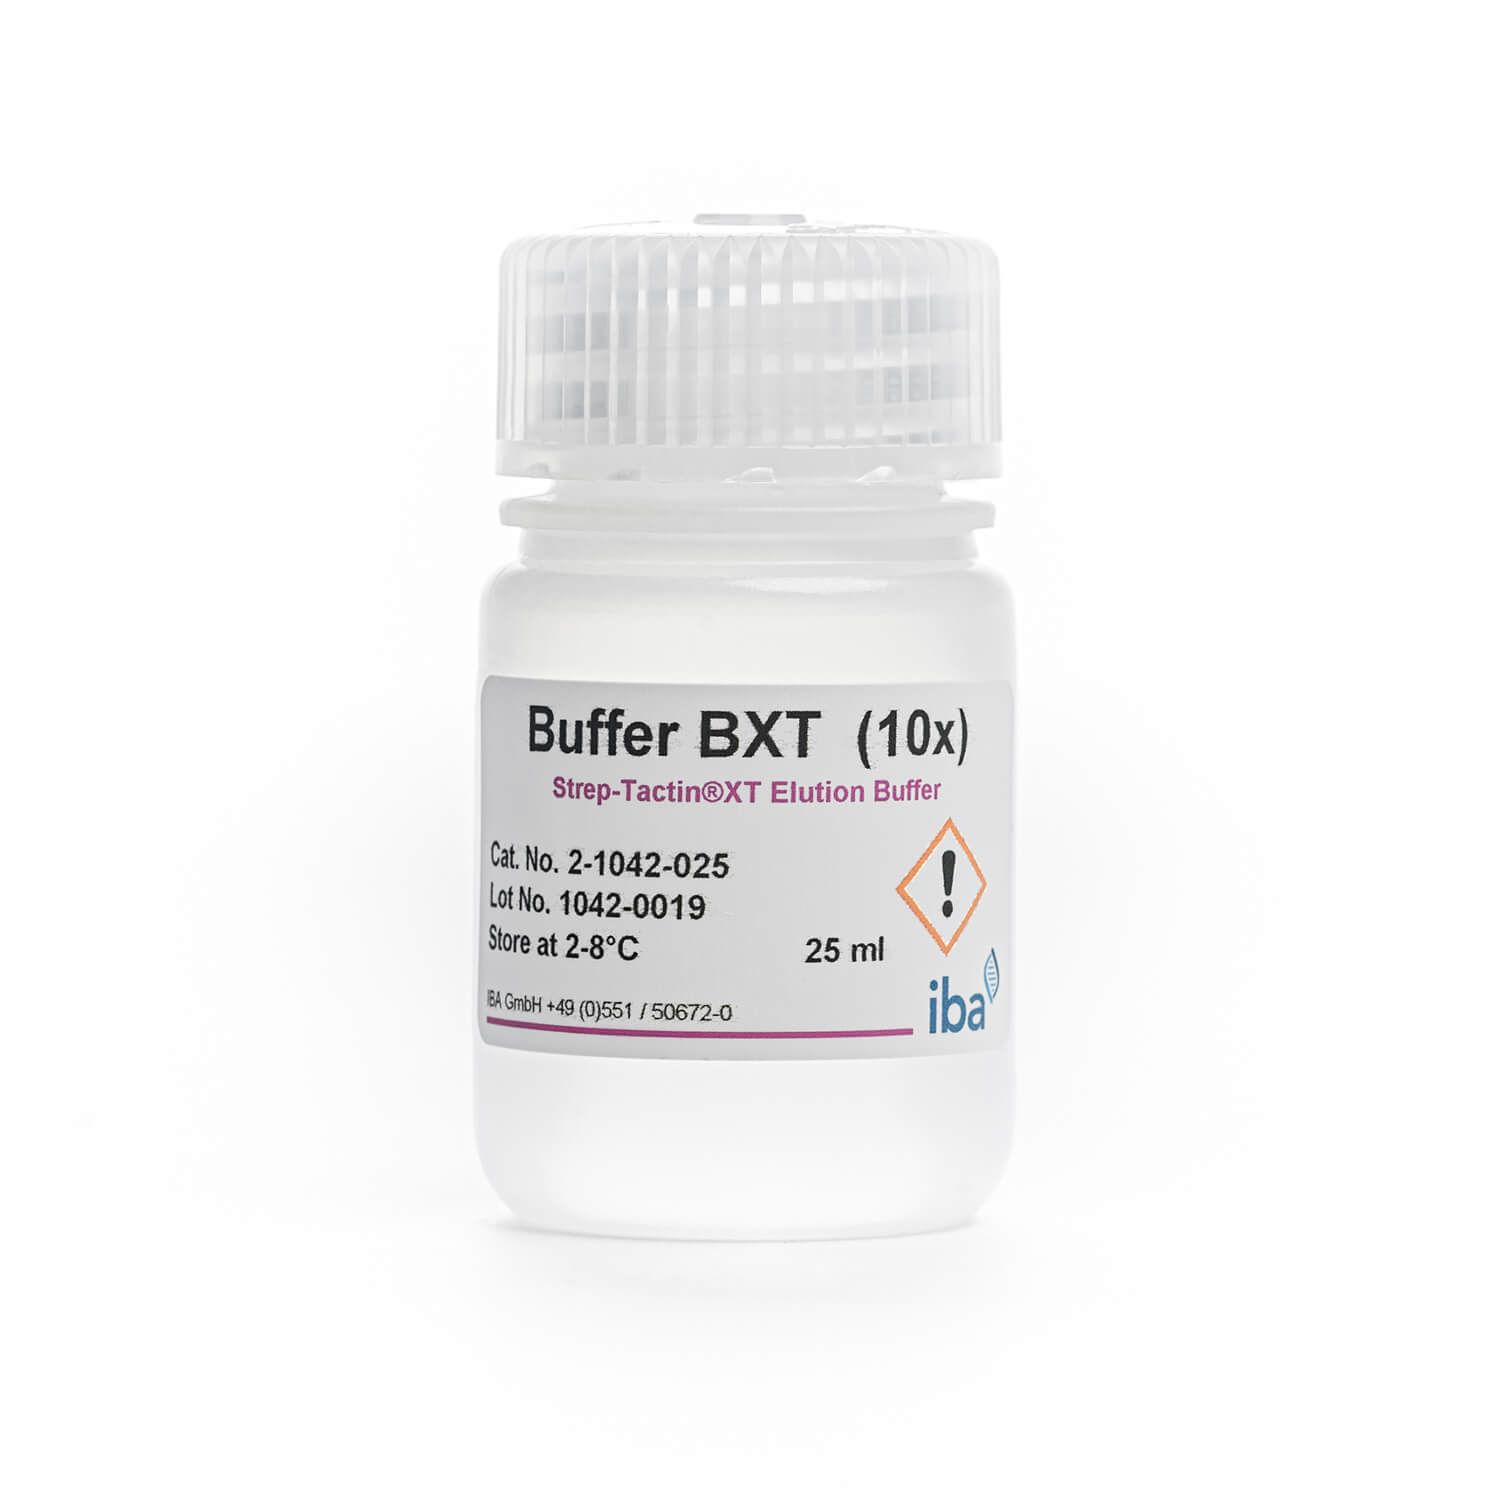 10x Buffer BXT; Strep-Tactin®XT Elution Buffer